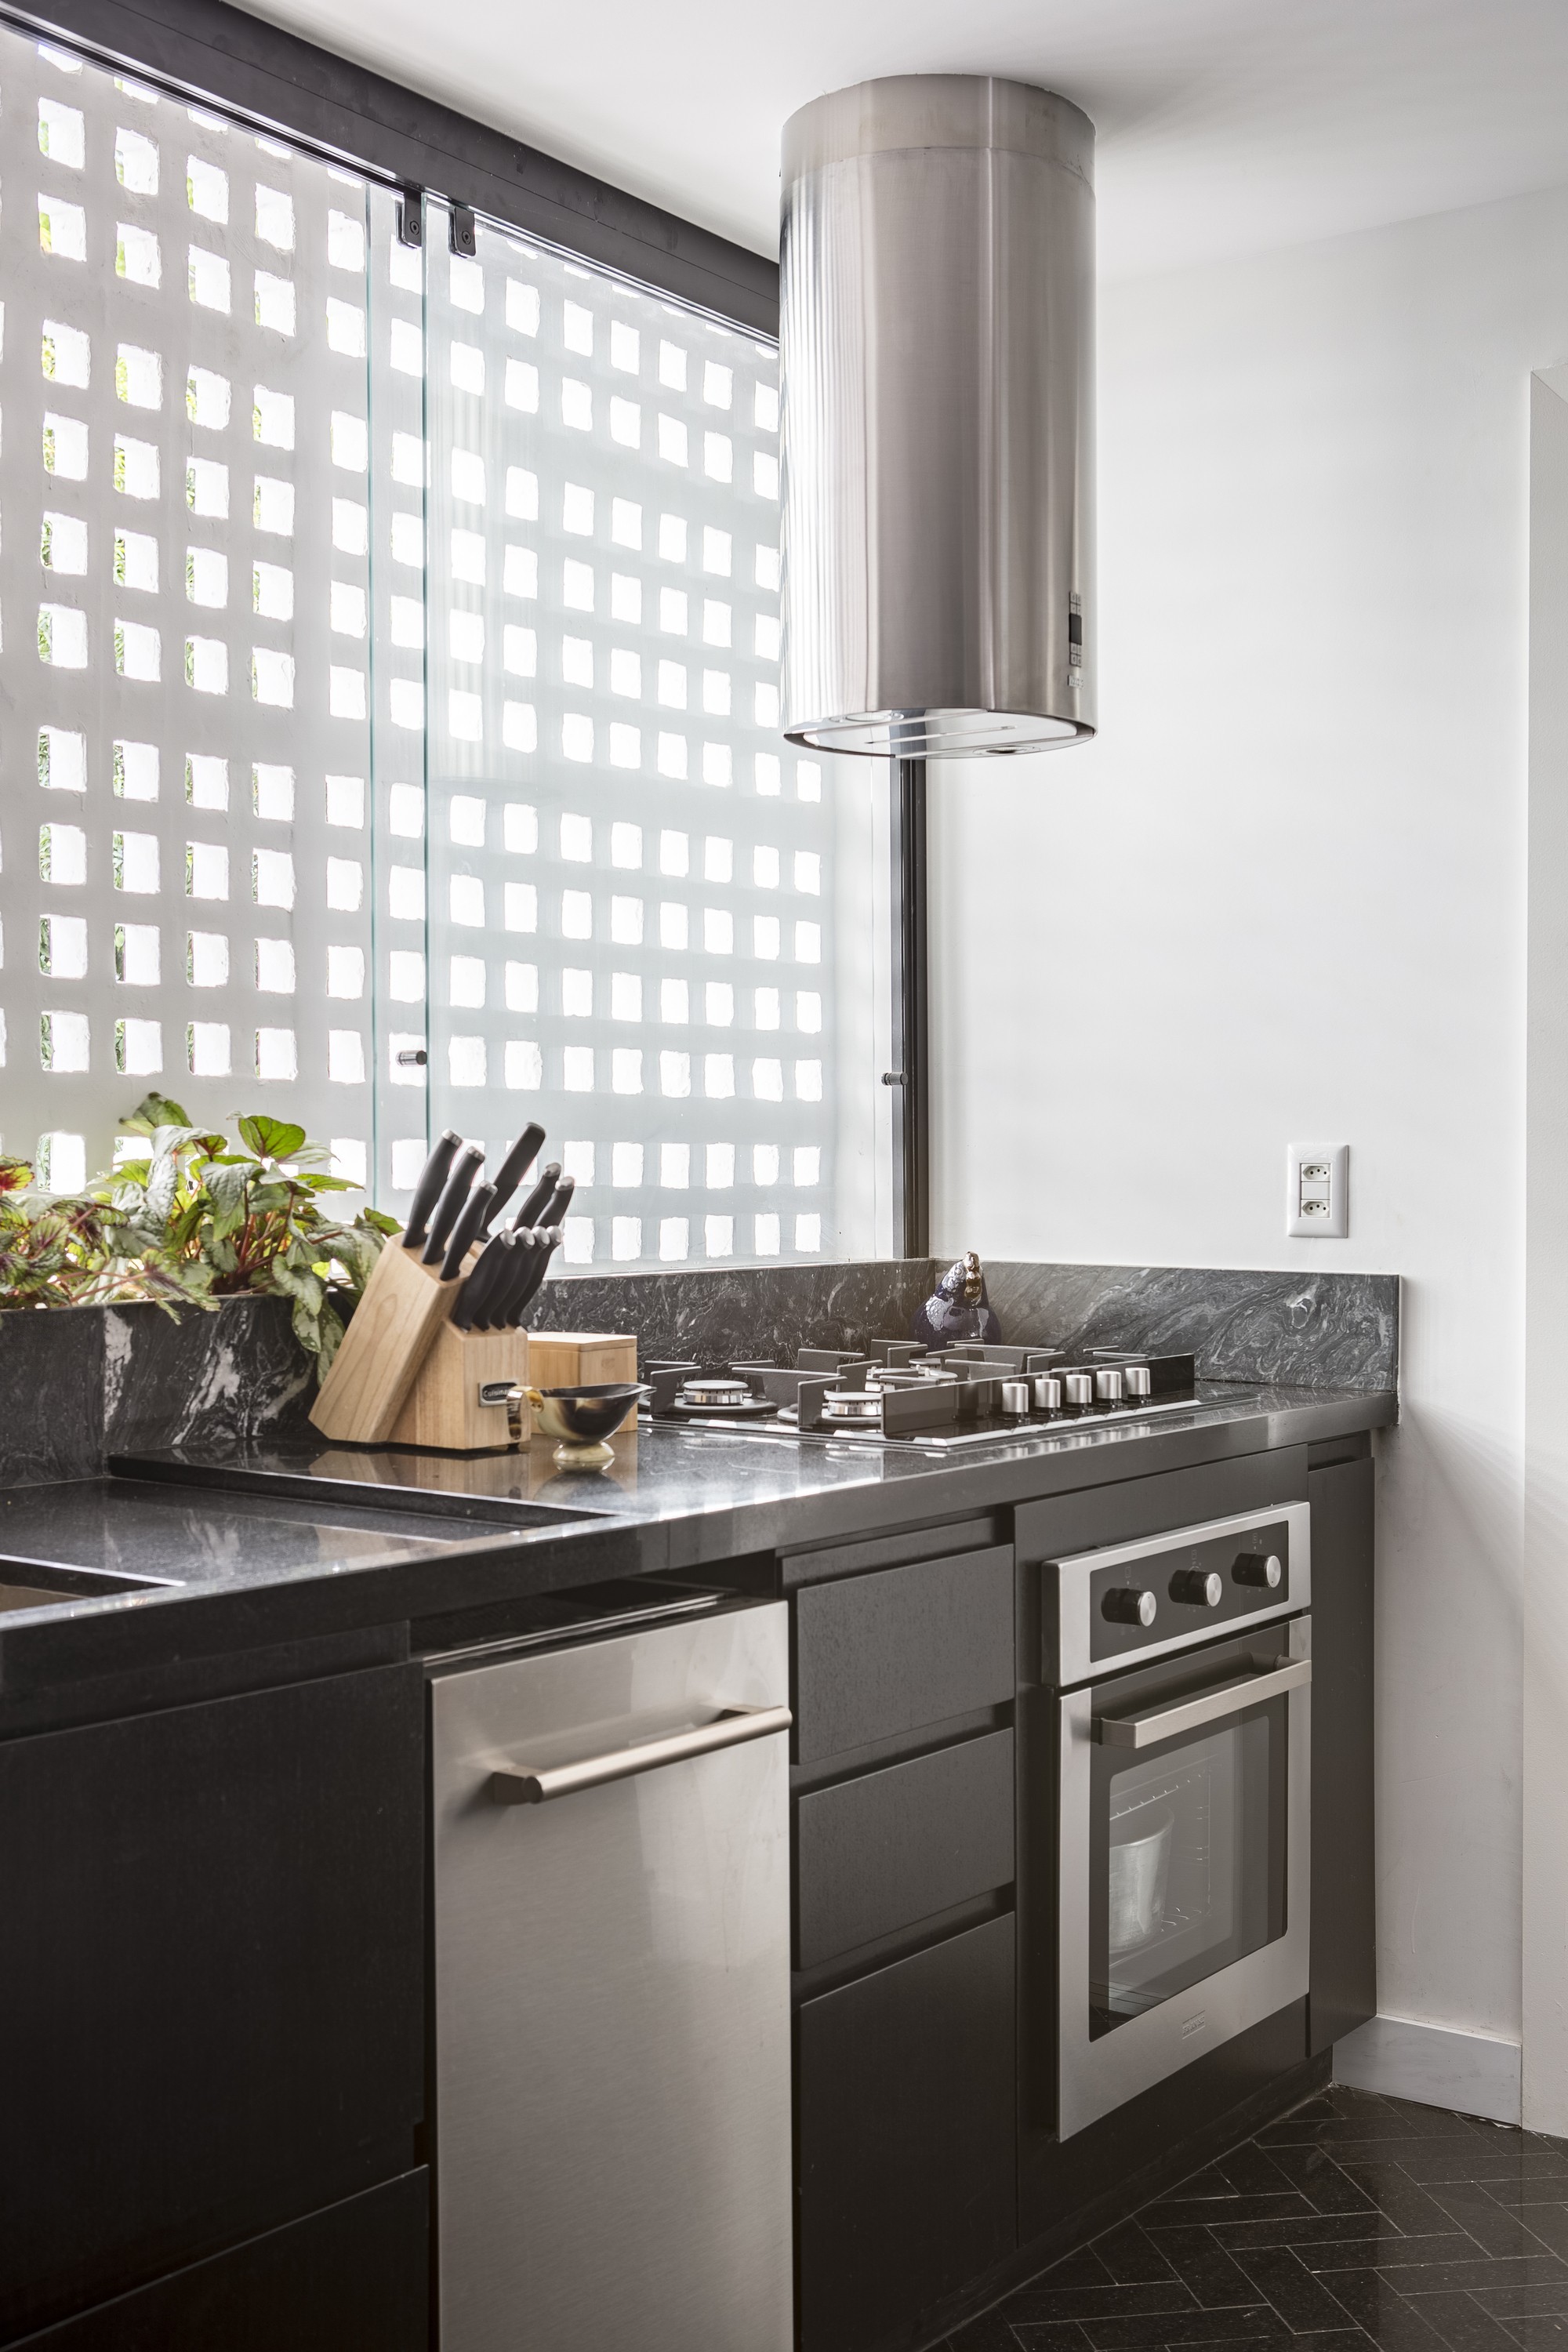 Cozinha compacta: ideias de decoração para espaços pequenos (Foto: Joana França)